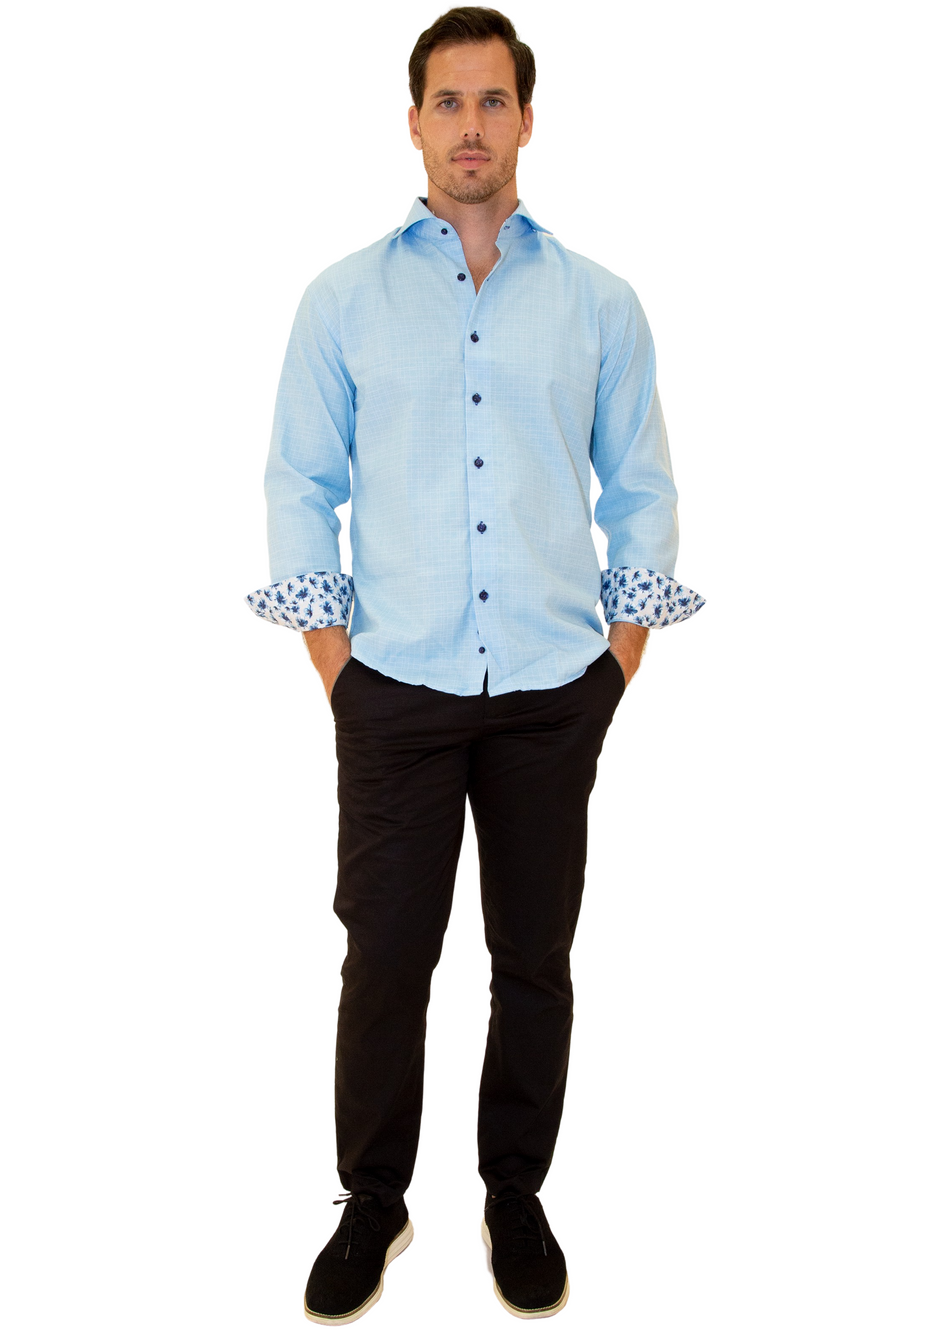 Linen Texture Floral Cuff Long Sleeve Dress Shirt Turquoise